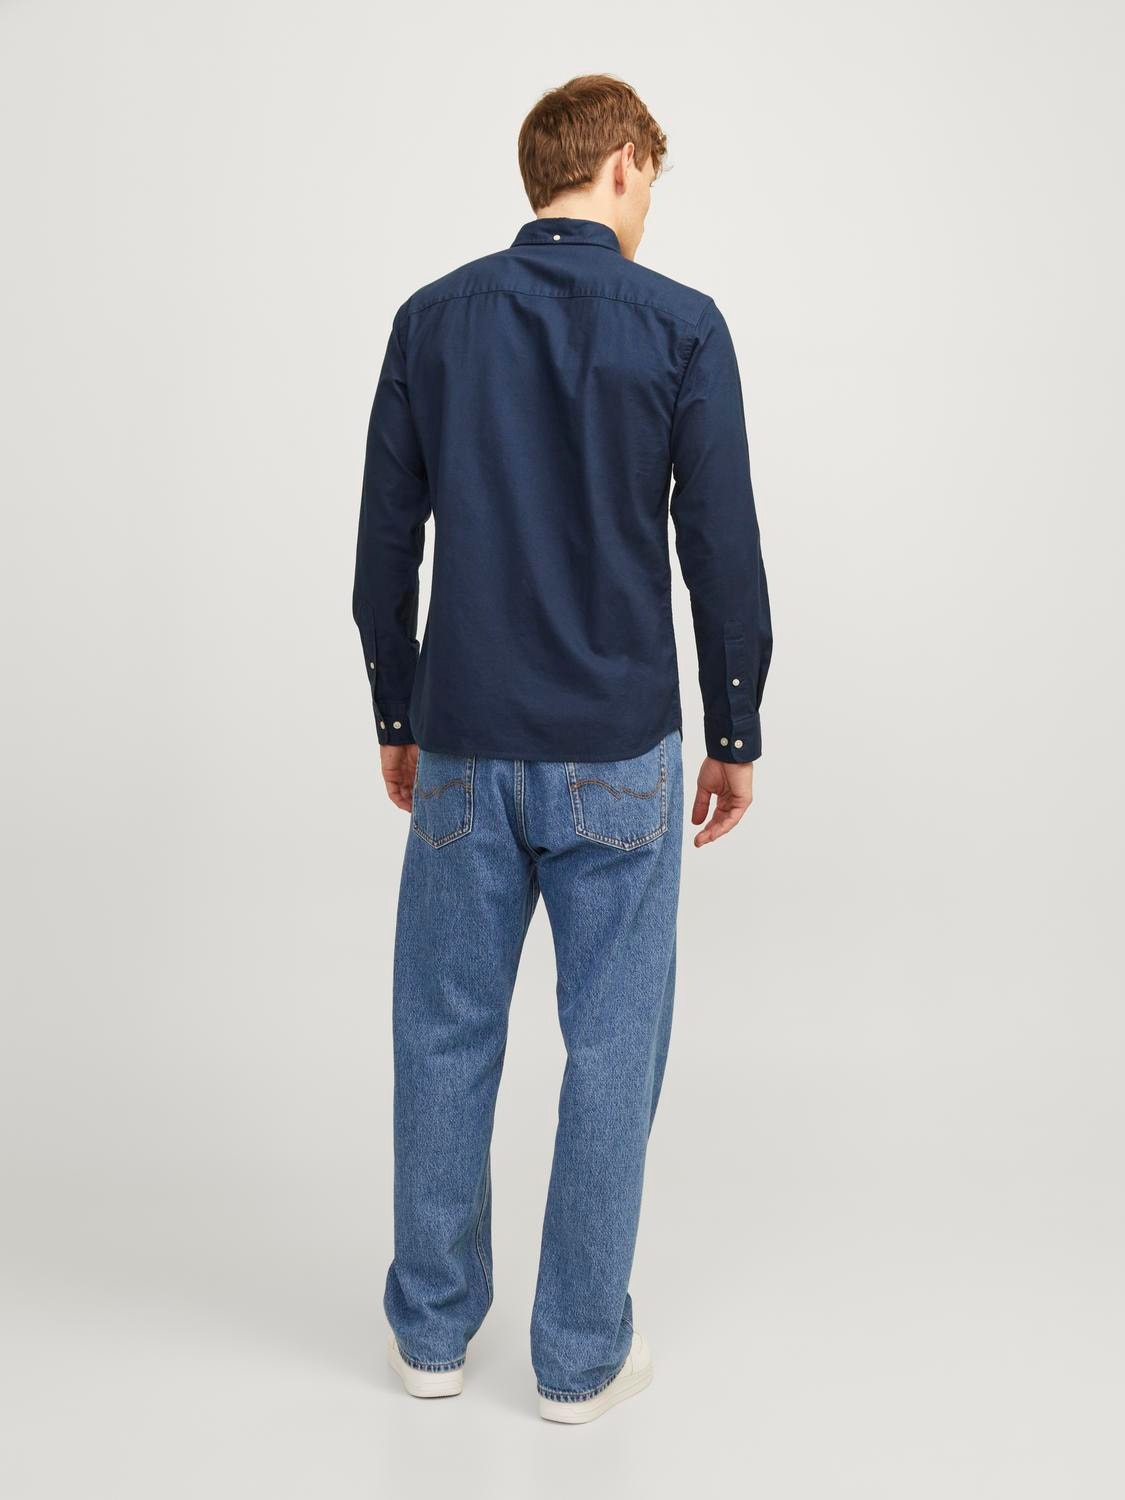 Jack & Jones Slim Fit Společenská košile -Navy Blazer - 12192150